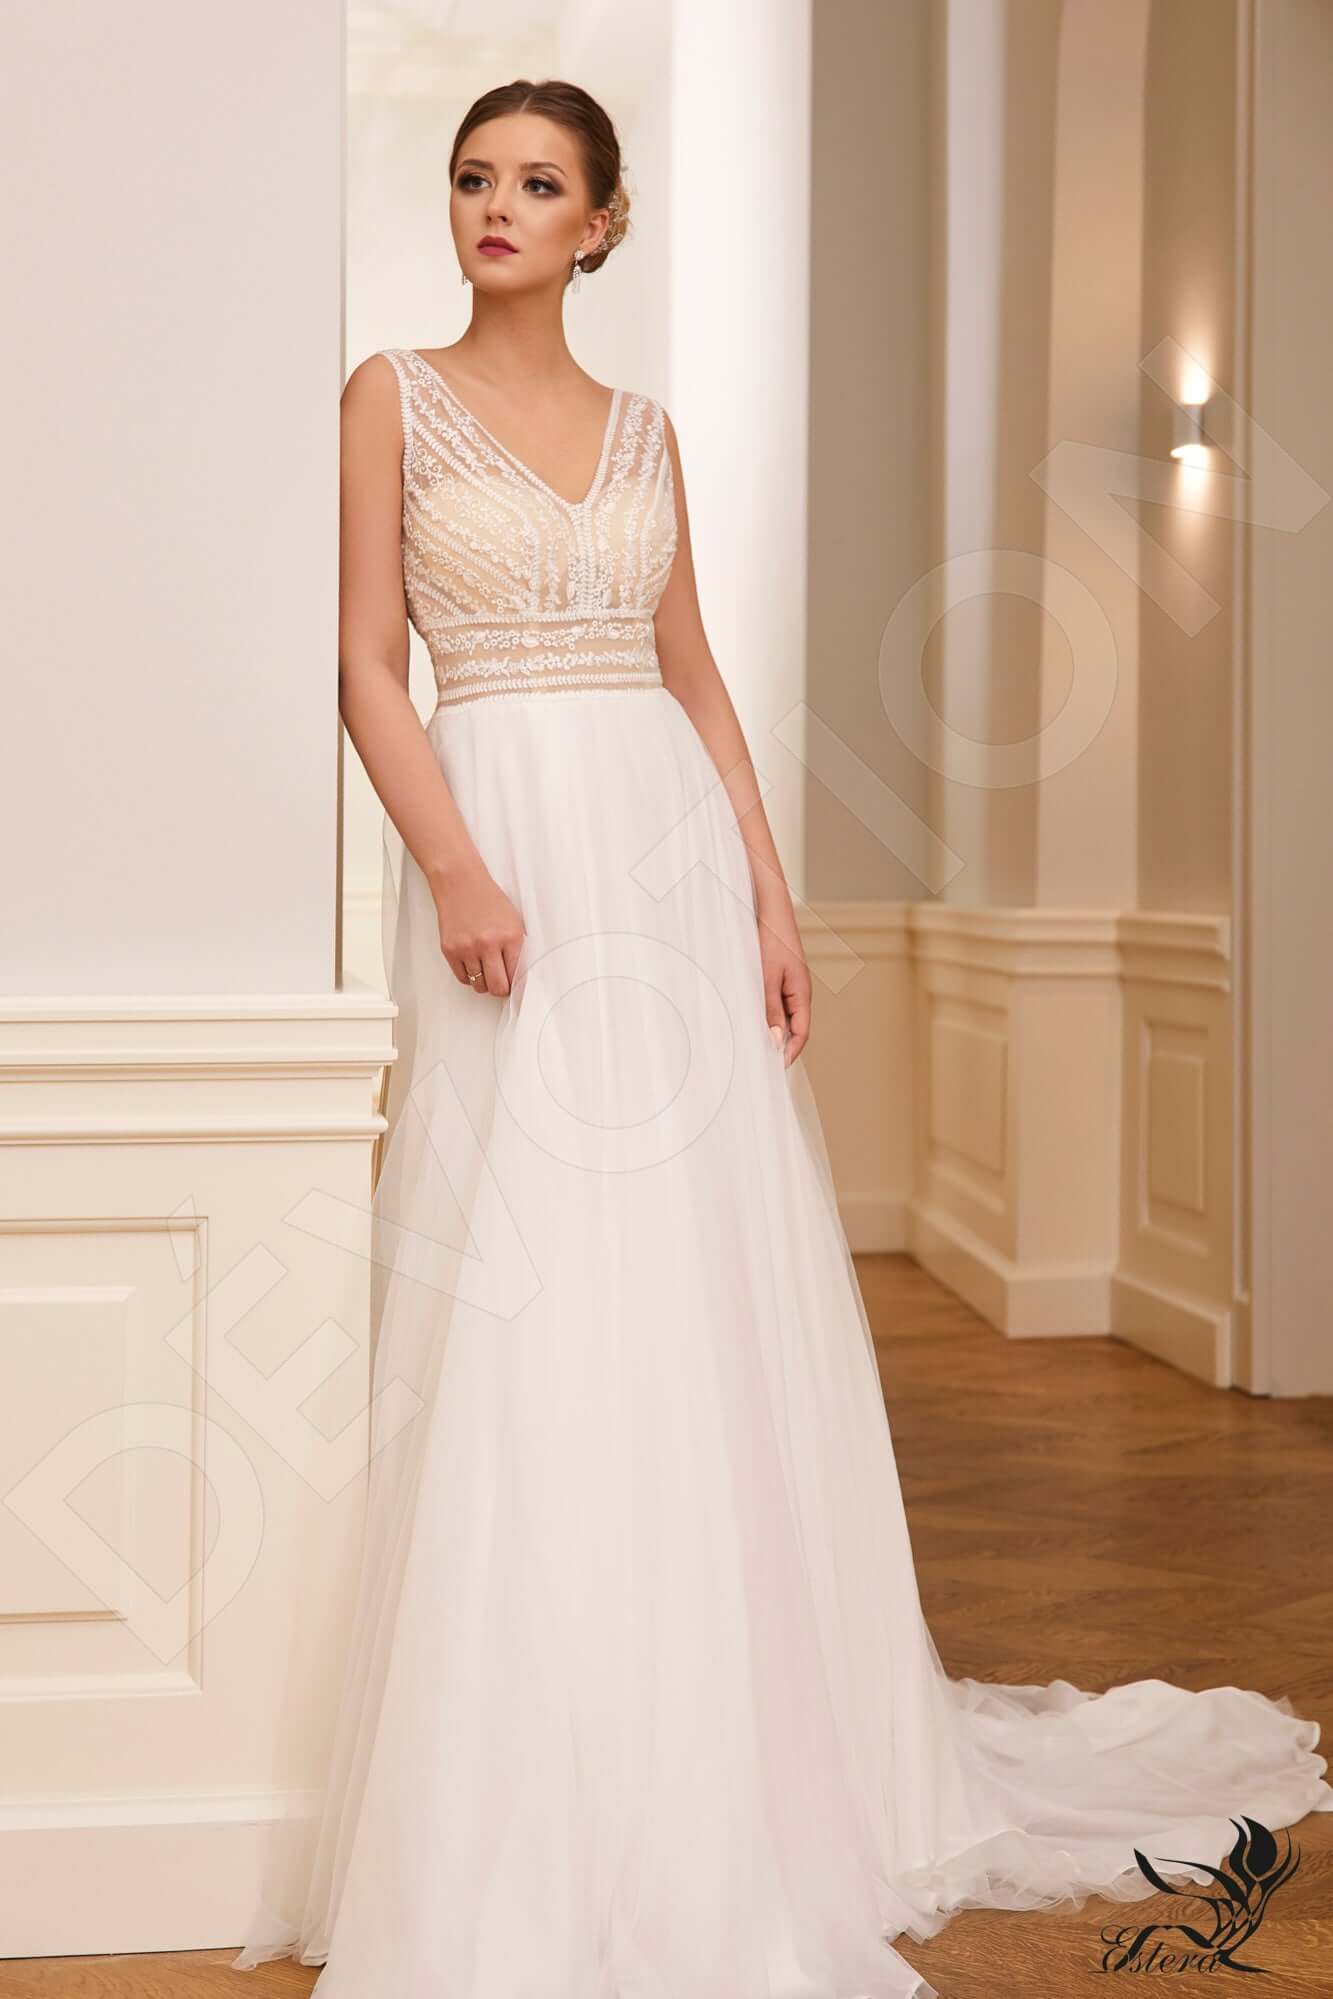 Abir Open back A-line Sleeveless Wedding Dress Front